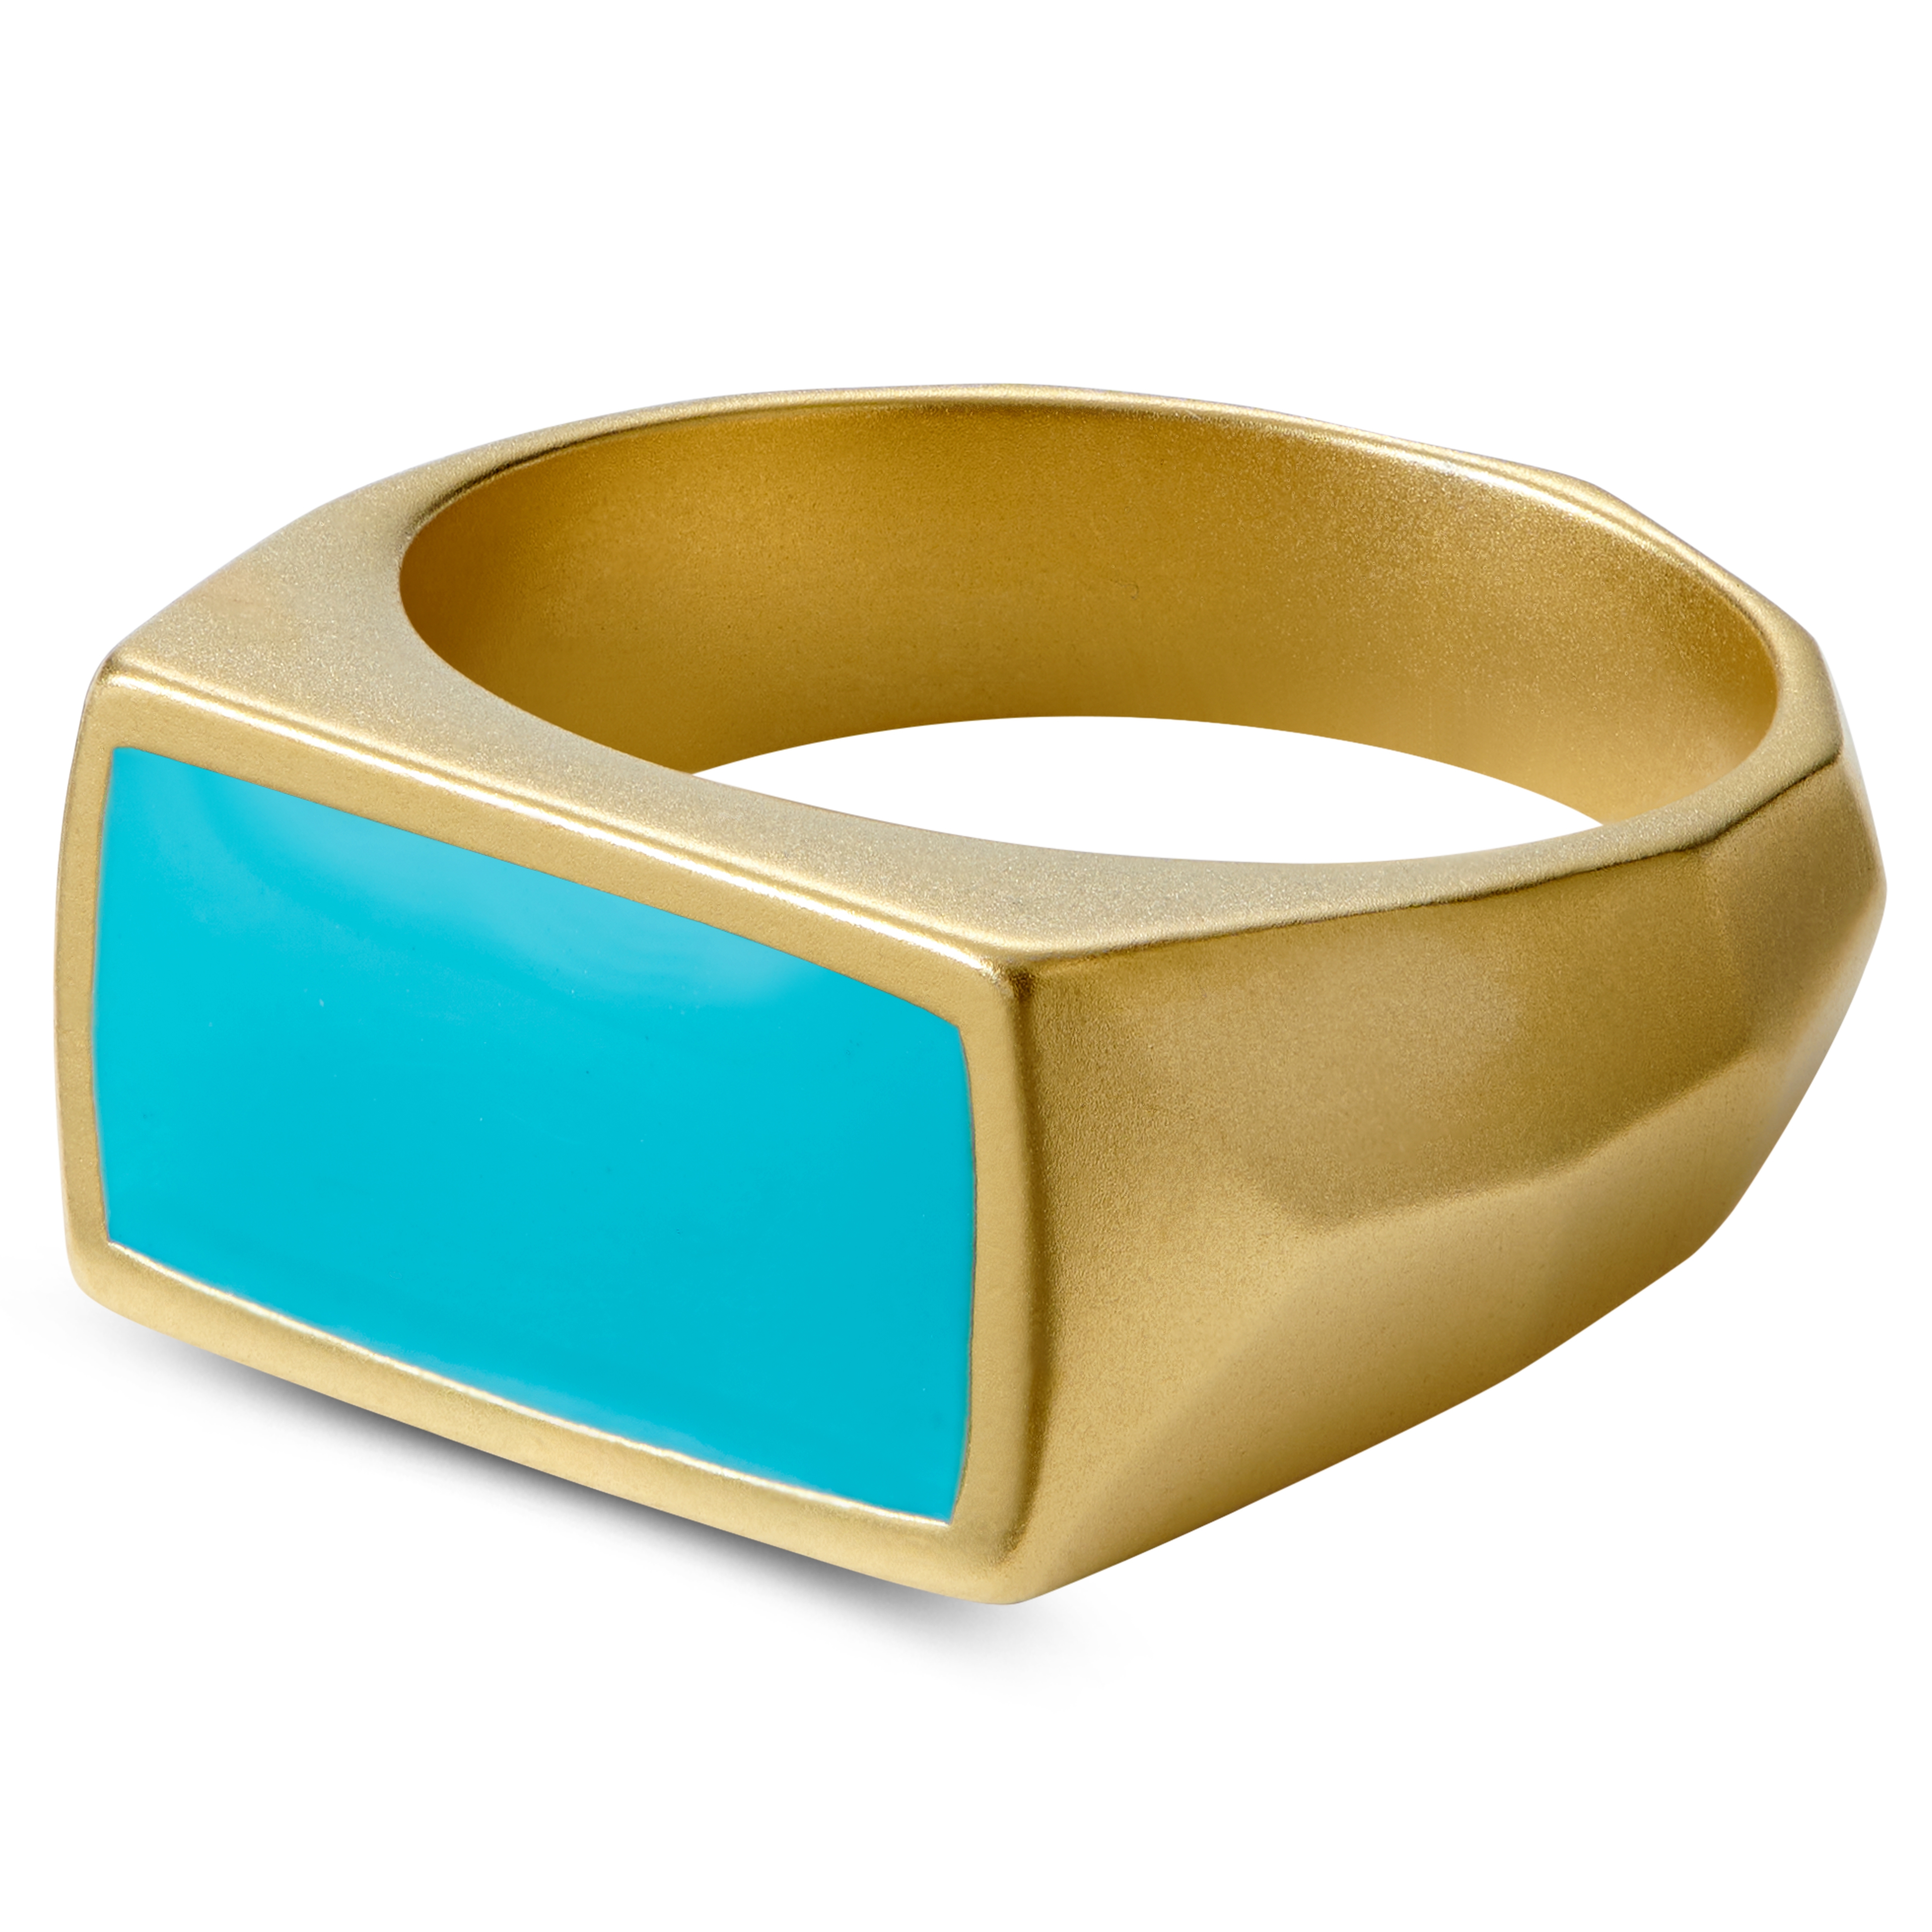 1stdibs | Gold Turquoise Mans Ring | Rings for men, Turquoise jewelry  native american, Turquoise men